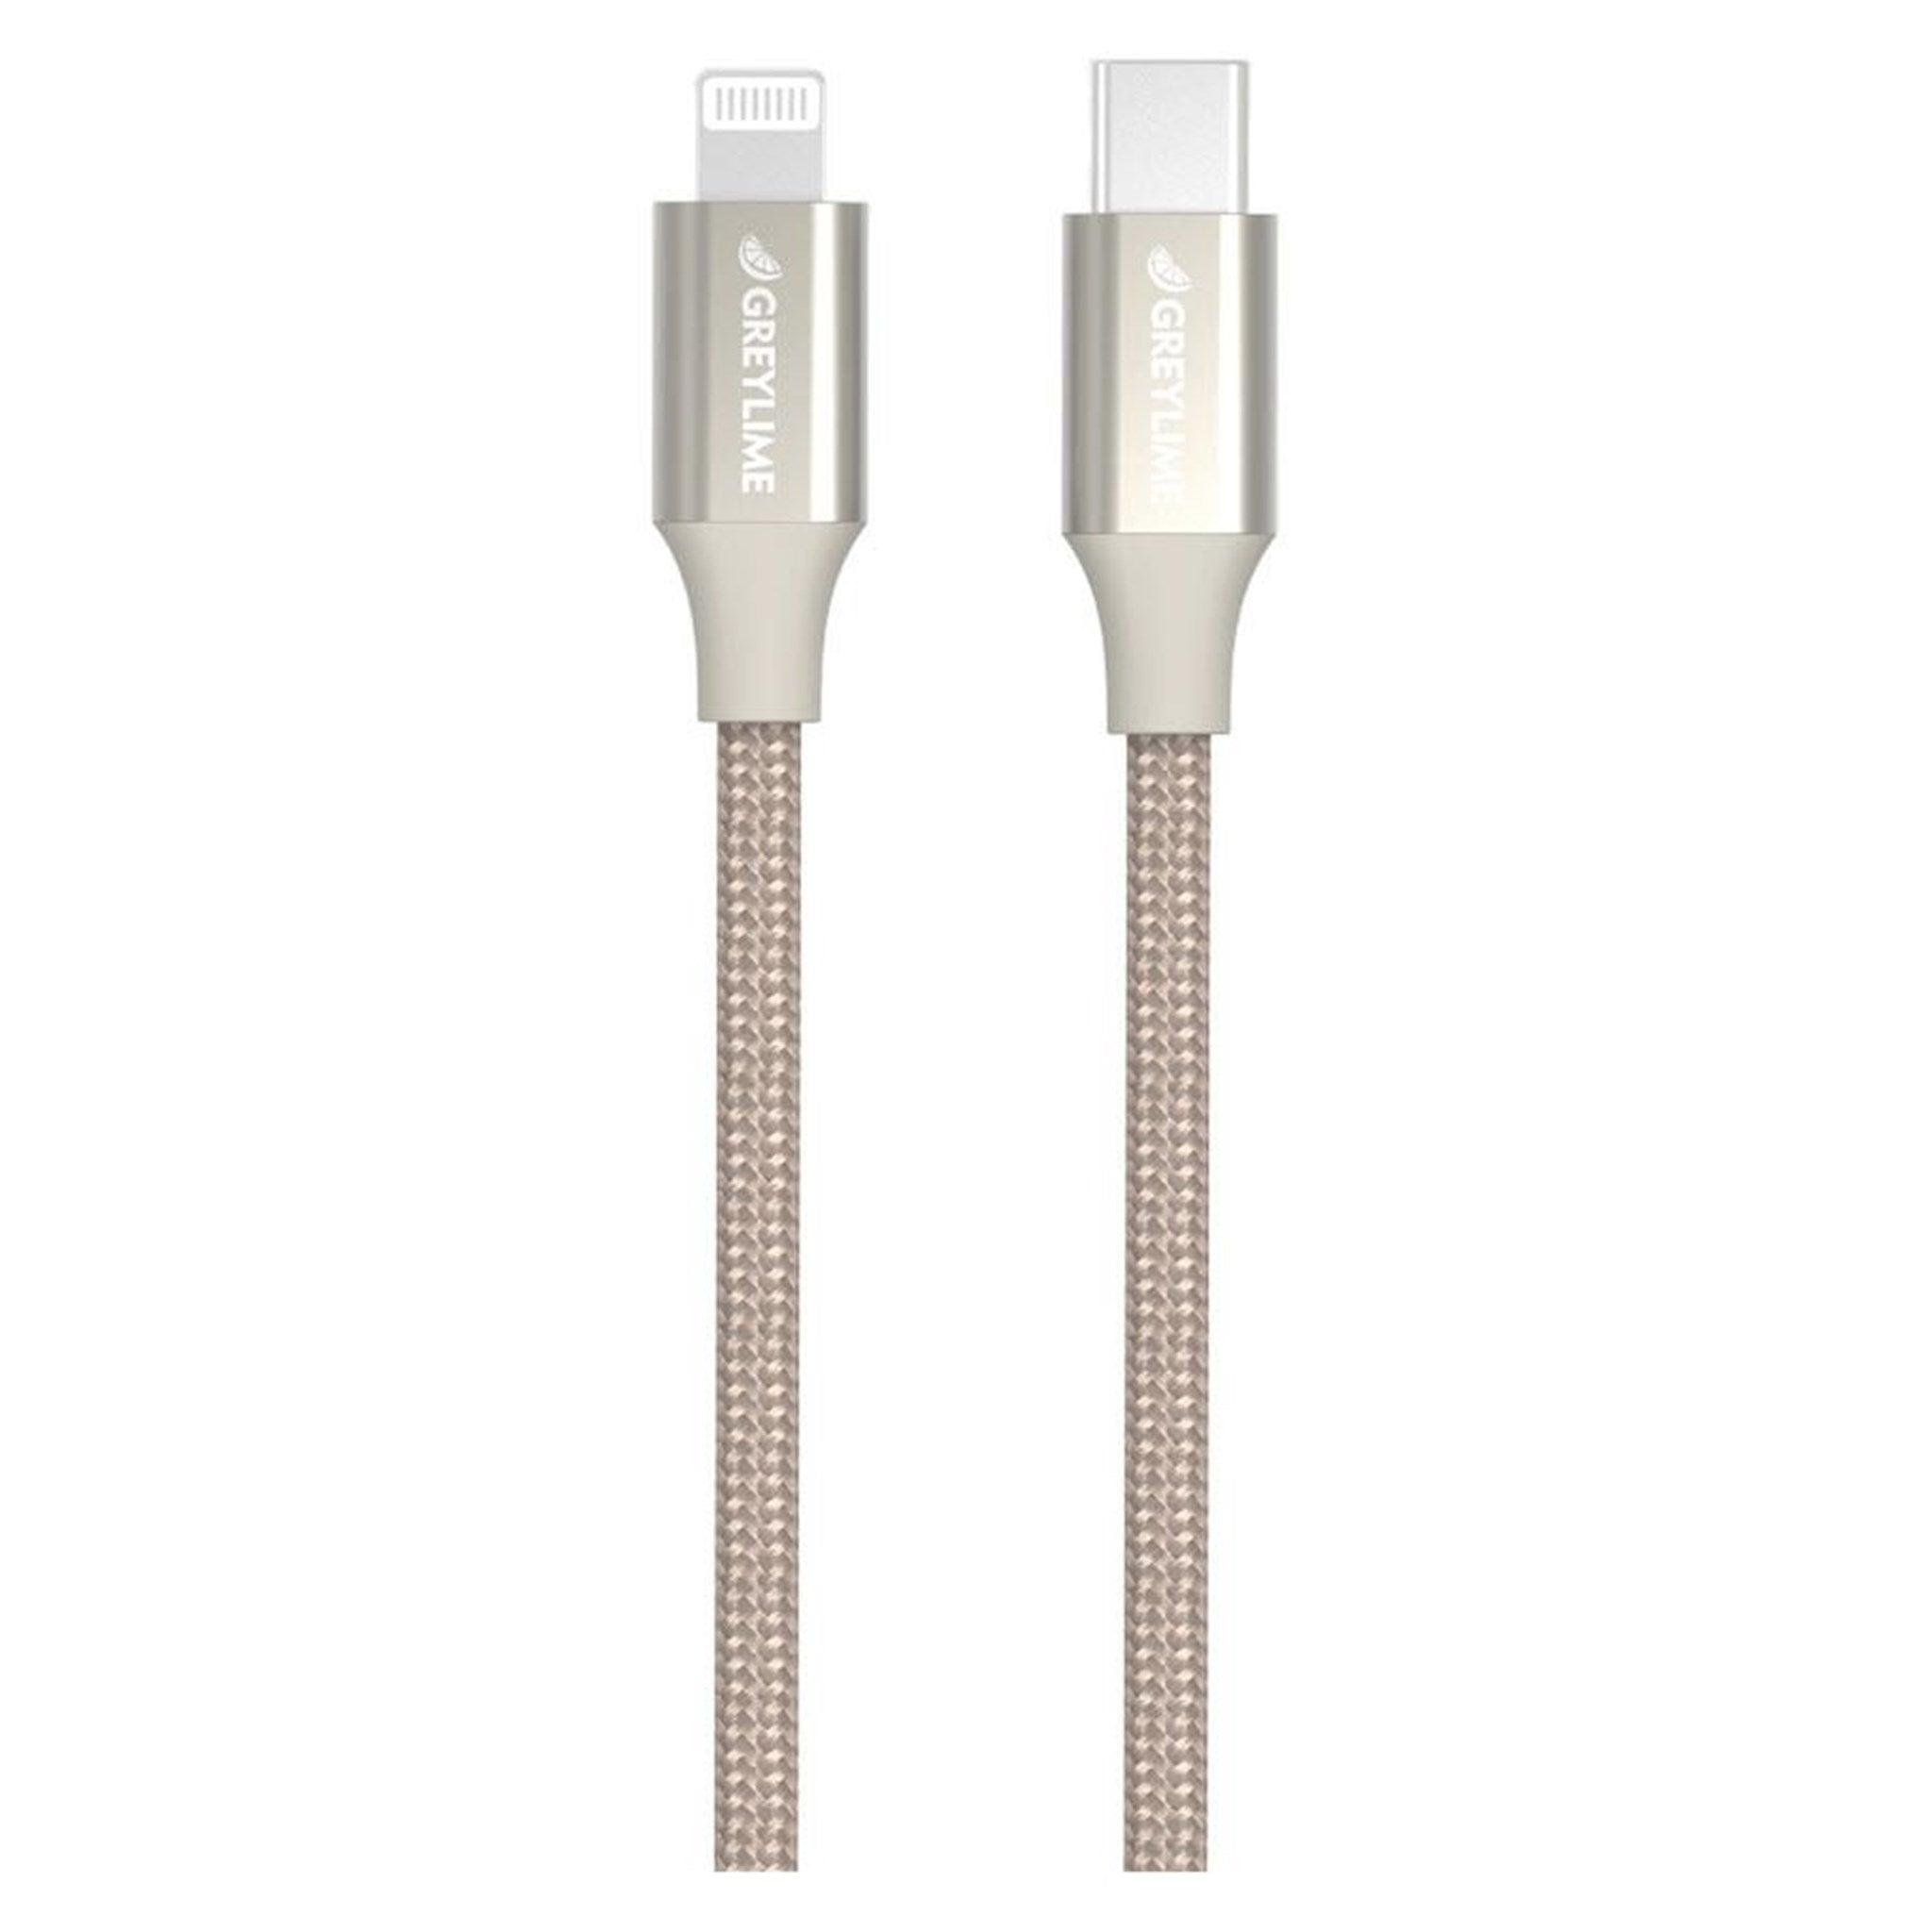 Billede af GreyLime Braided USB-C til MFi Lightning Kabel Beige 2 m hos GreyLime